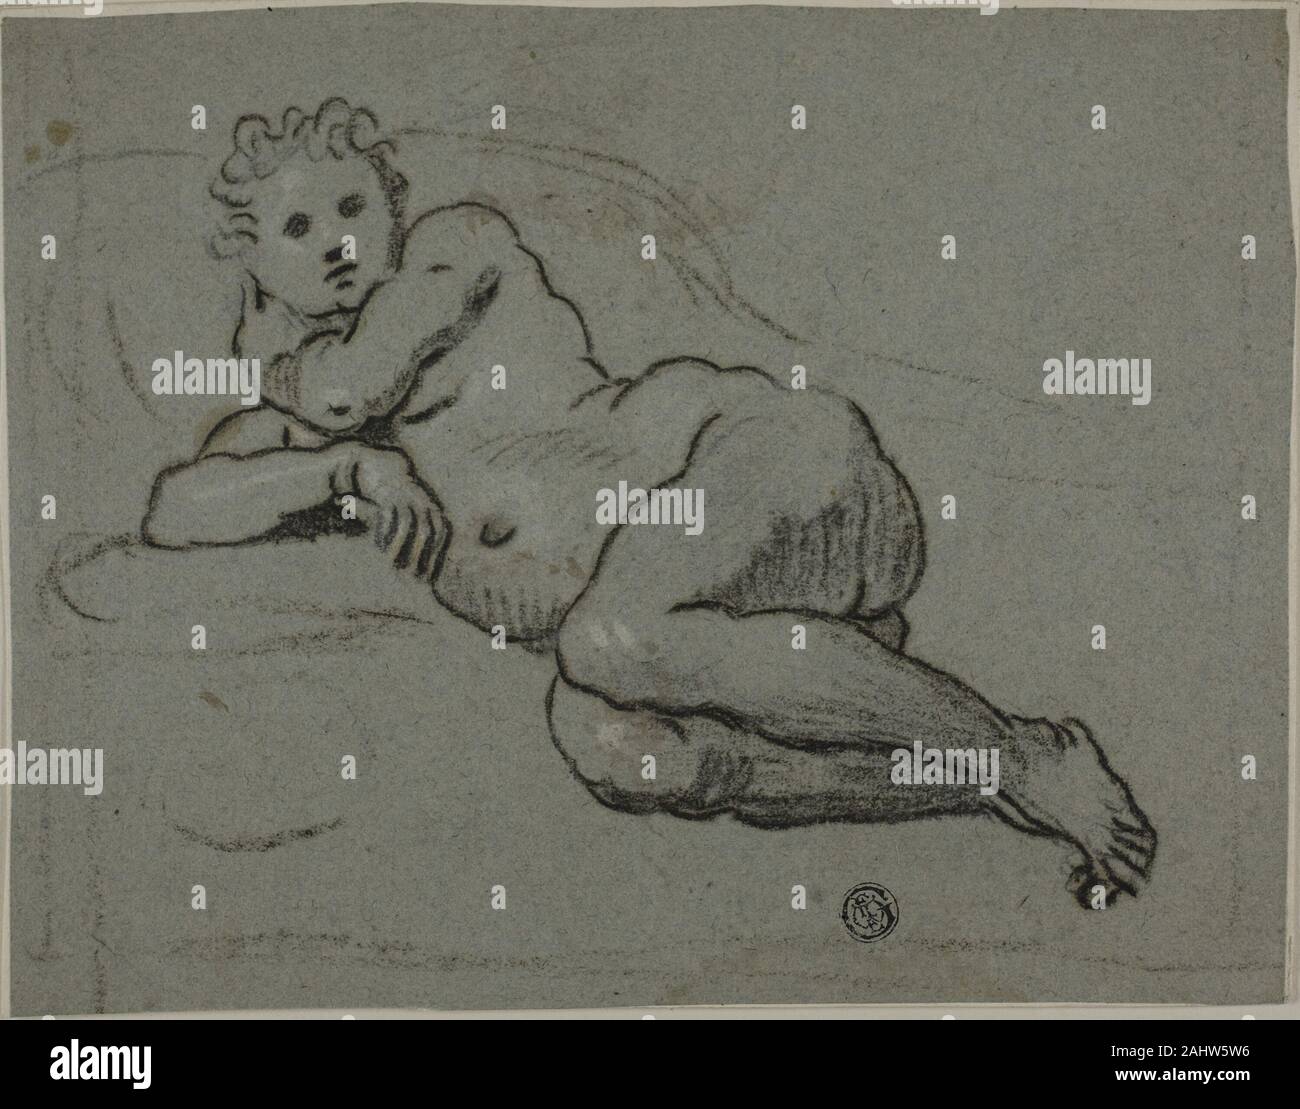 Atelier de Domenico Tintoretto. Nu couché. 1500-1599. L'Italie. Le charbon de bois, charbon de bois huilé avec de l'emploi, avec des traces de craie blanche, sur papier bleu, fixées sur papier vergé ivoire Banque D'Images